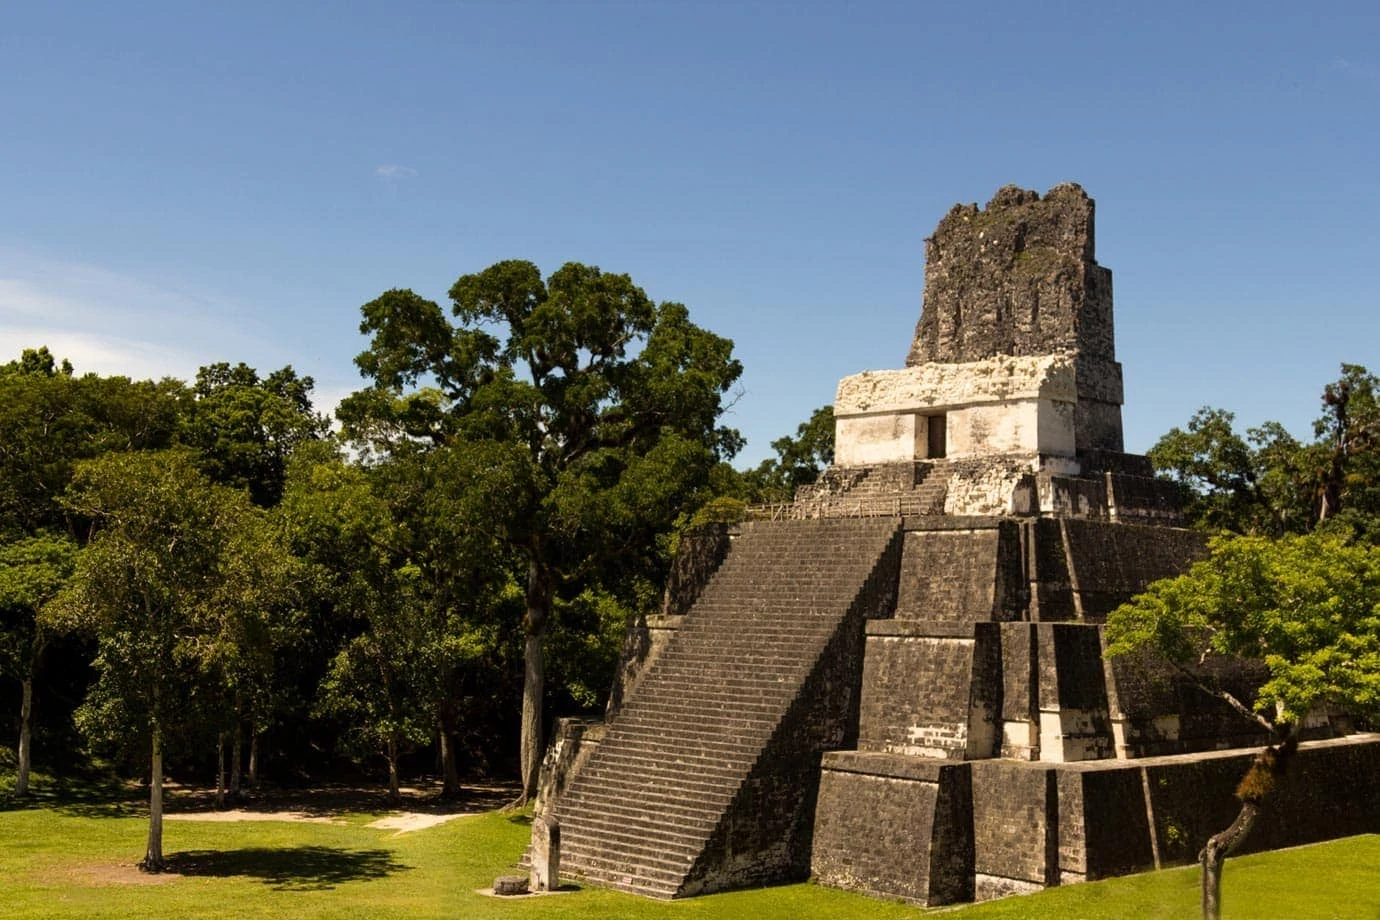 Taking in Tikal